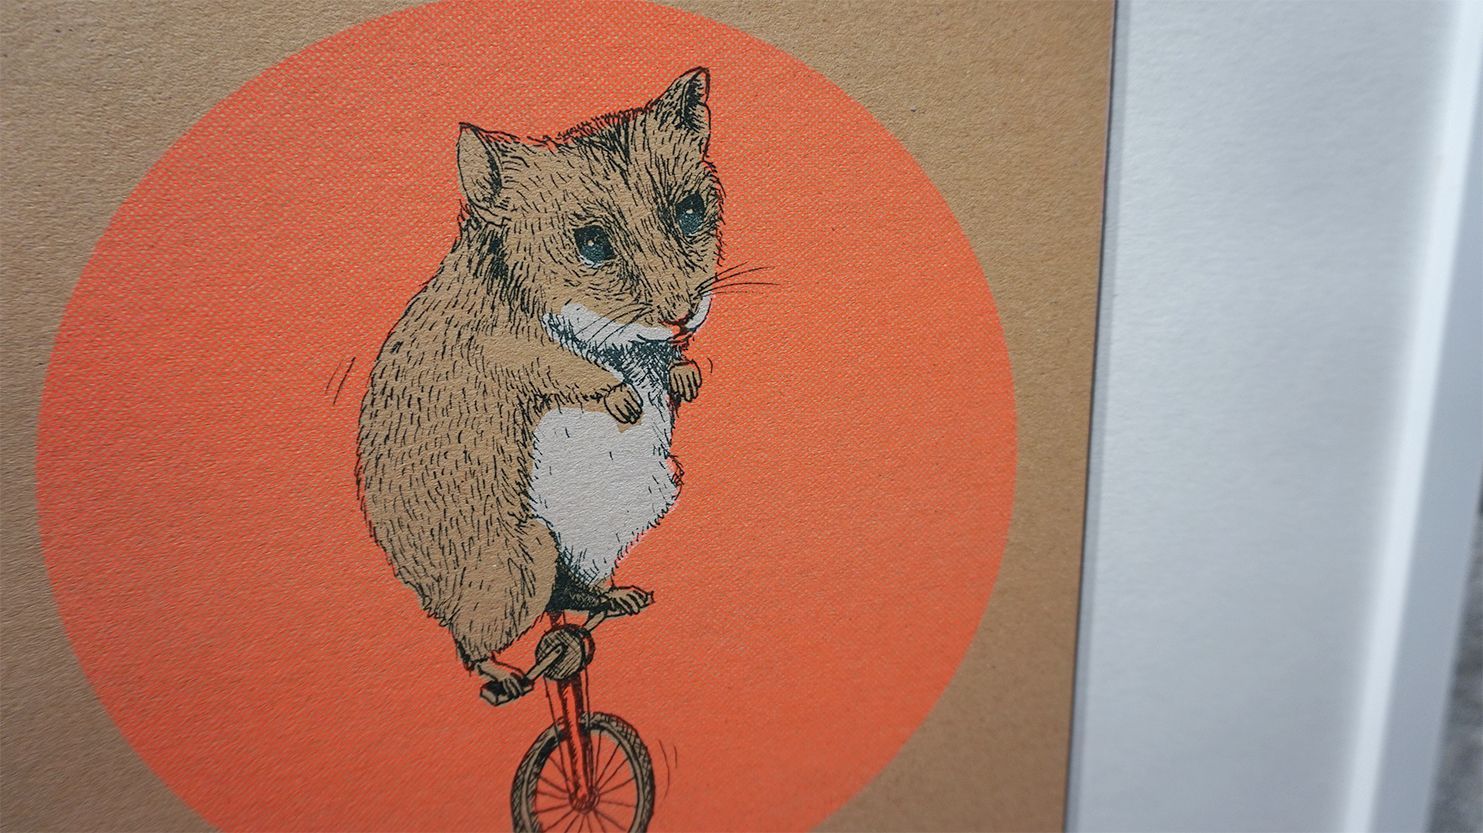 Bildauschnitt zeigt eine Illustration von einer Hamster, das Einrad fährt, mit einem orangenen Kreis im Hintergrund. Gedruckt auf braunem Umweltpapier.